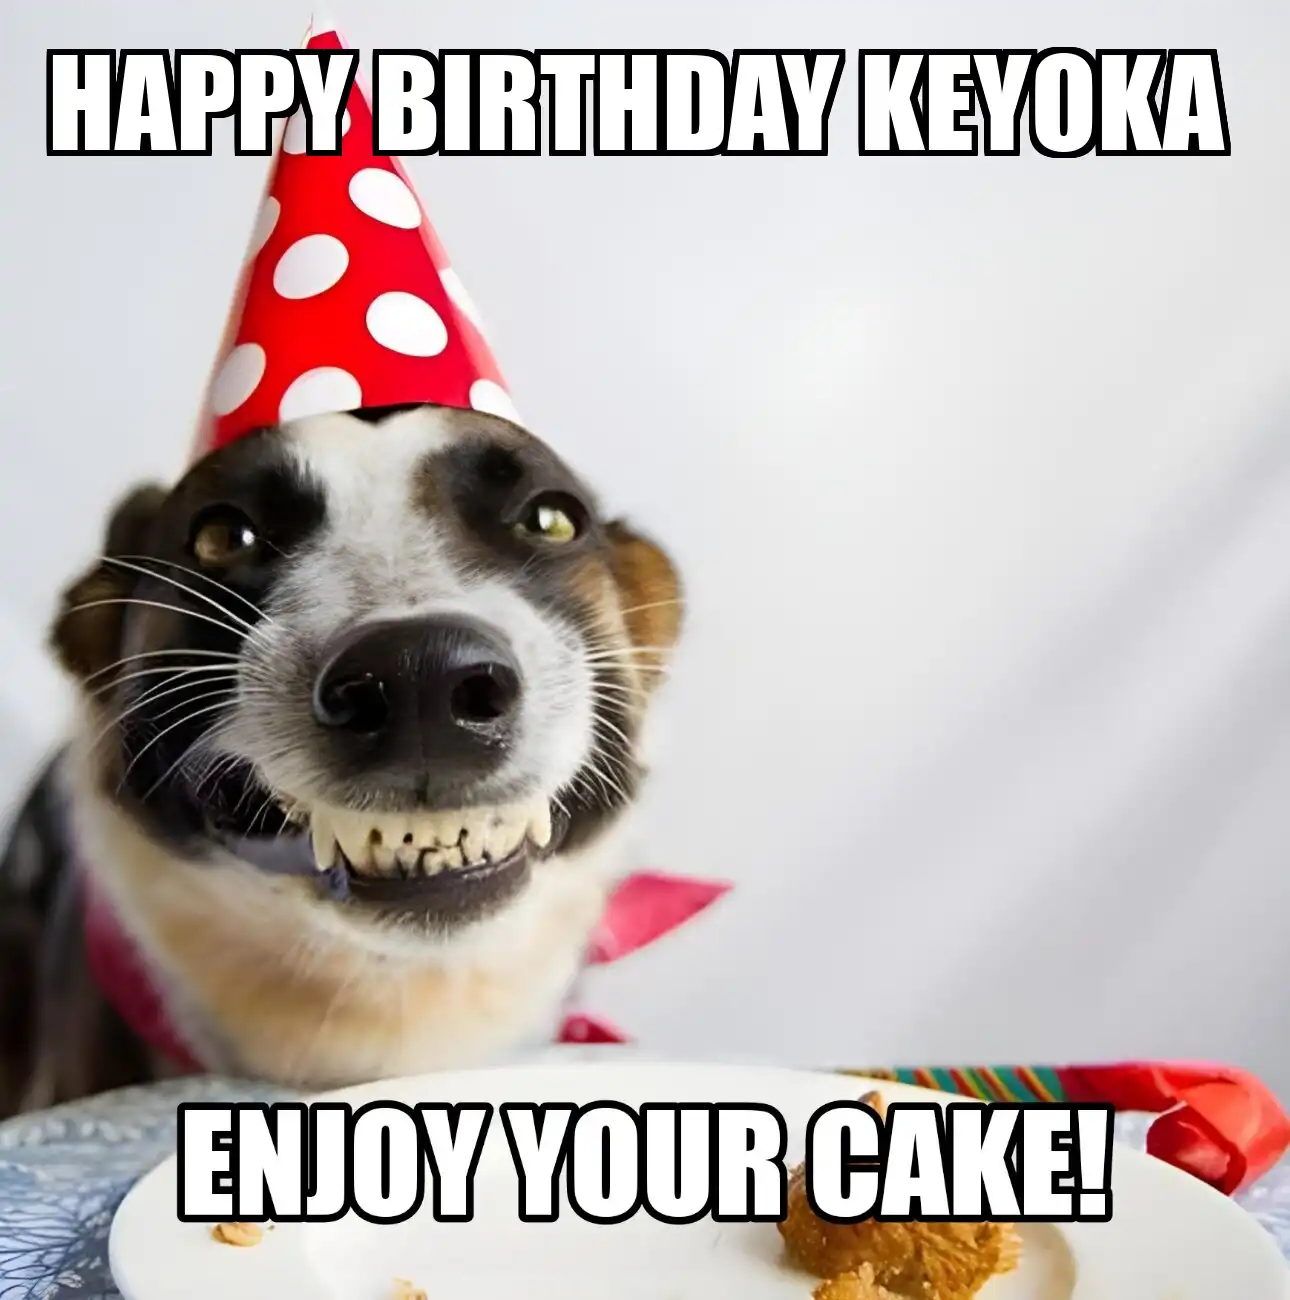 Happy Birthday Keyoka Enjoy Your Cake Dog Meme